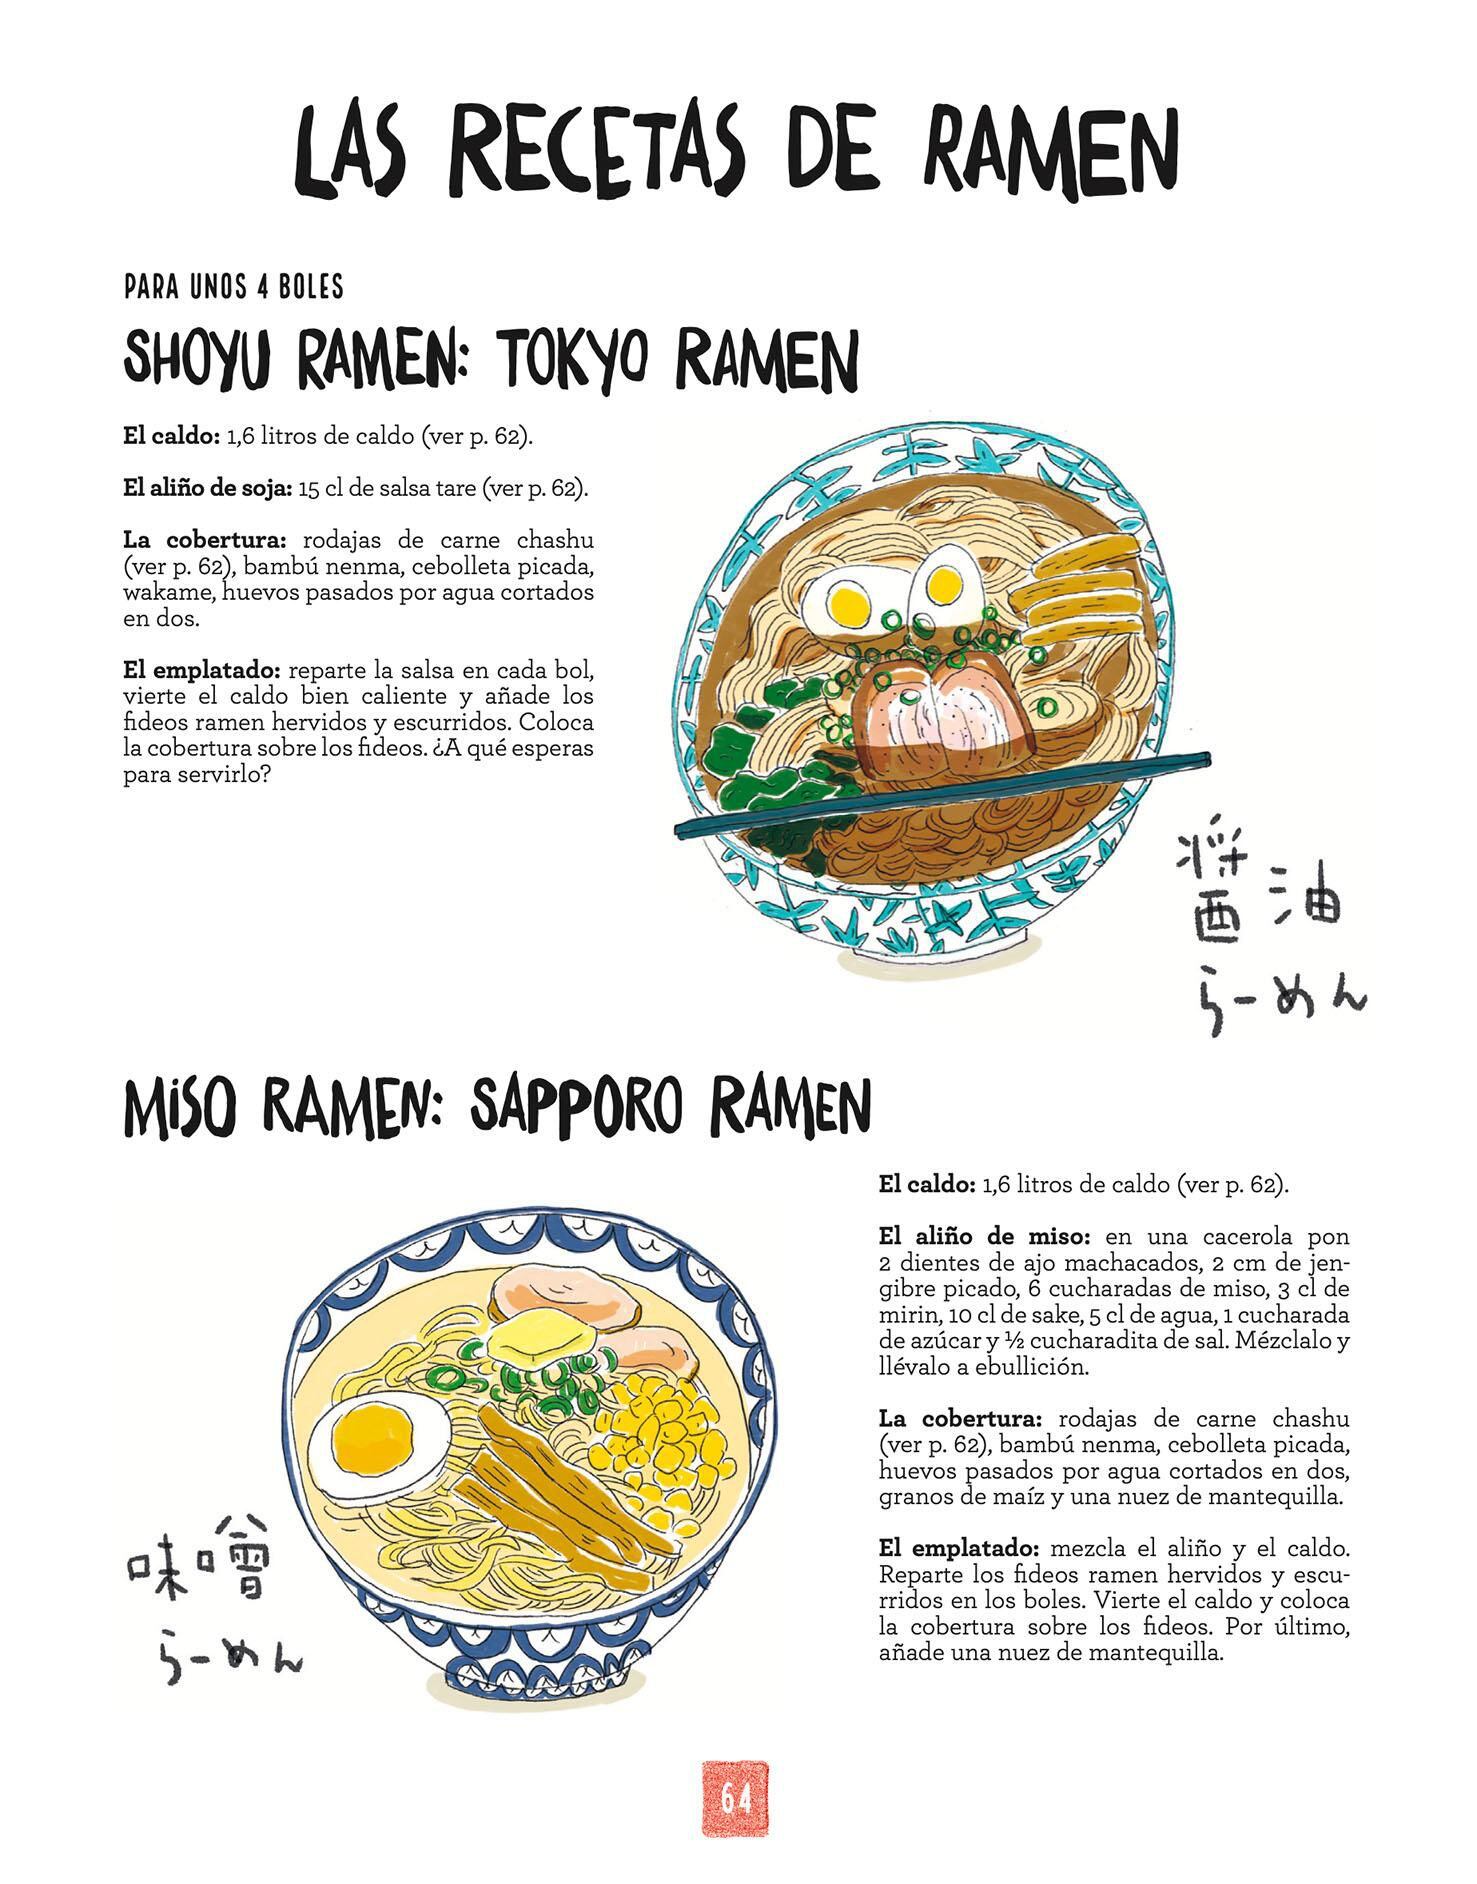 Interior del libro La cocina japonesa ilustrada (Editorial Col&Col).